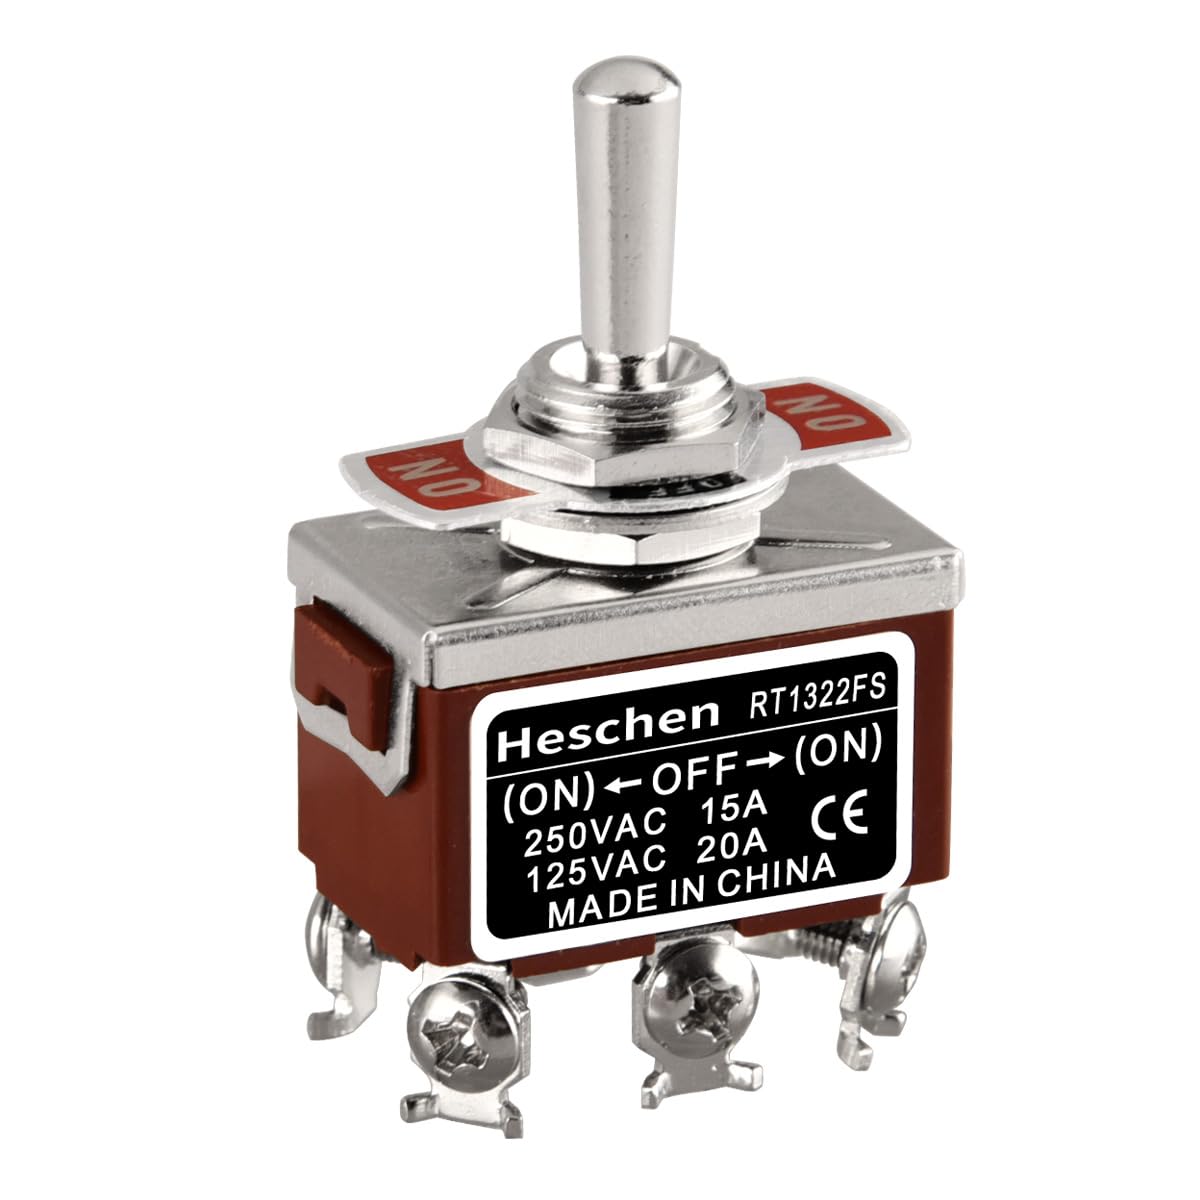 Heschen Metall-Kipptaster, RT1322FS, DPDT, Momentan Wipptaster mit 3 Positionen (On)/Off/(On), 15A 250VAC, CE-Kennzeichnung von Heschen